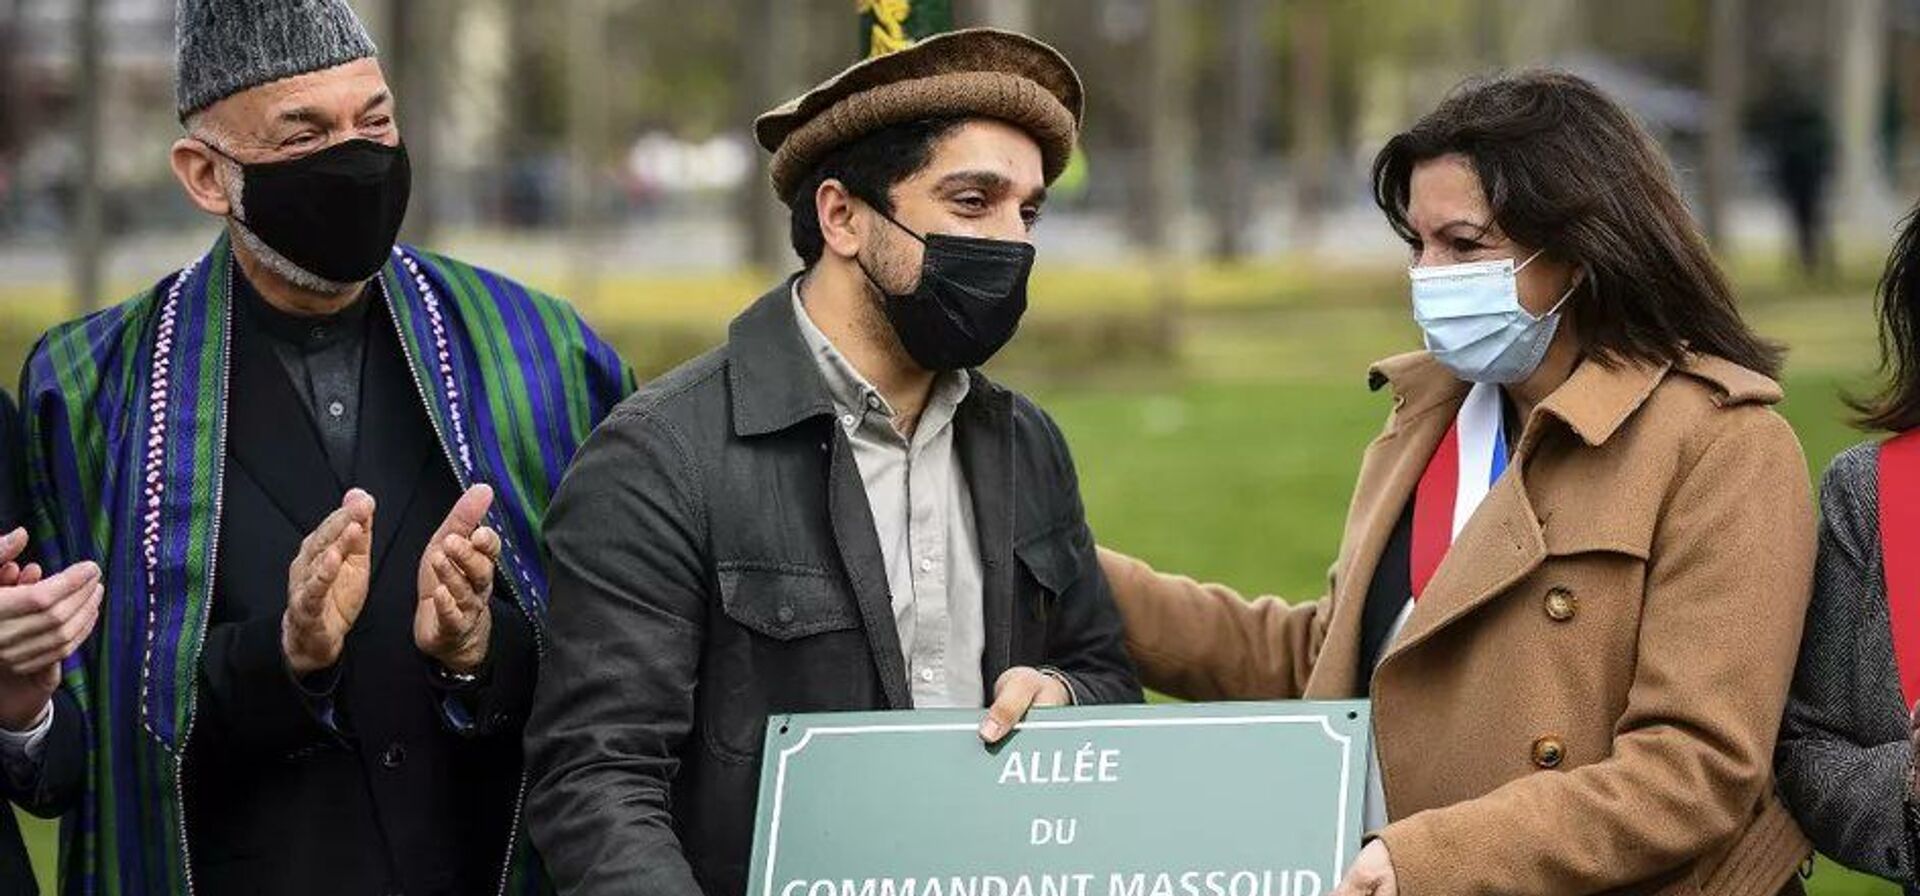  از لوح یادبود «چهره جاودانی مقاومت» در پاریس رونمایی شد - اسپوتنیک افغانستان  , 1920, 27.03.2021